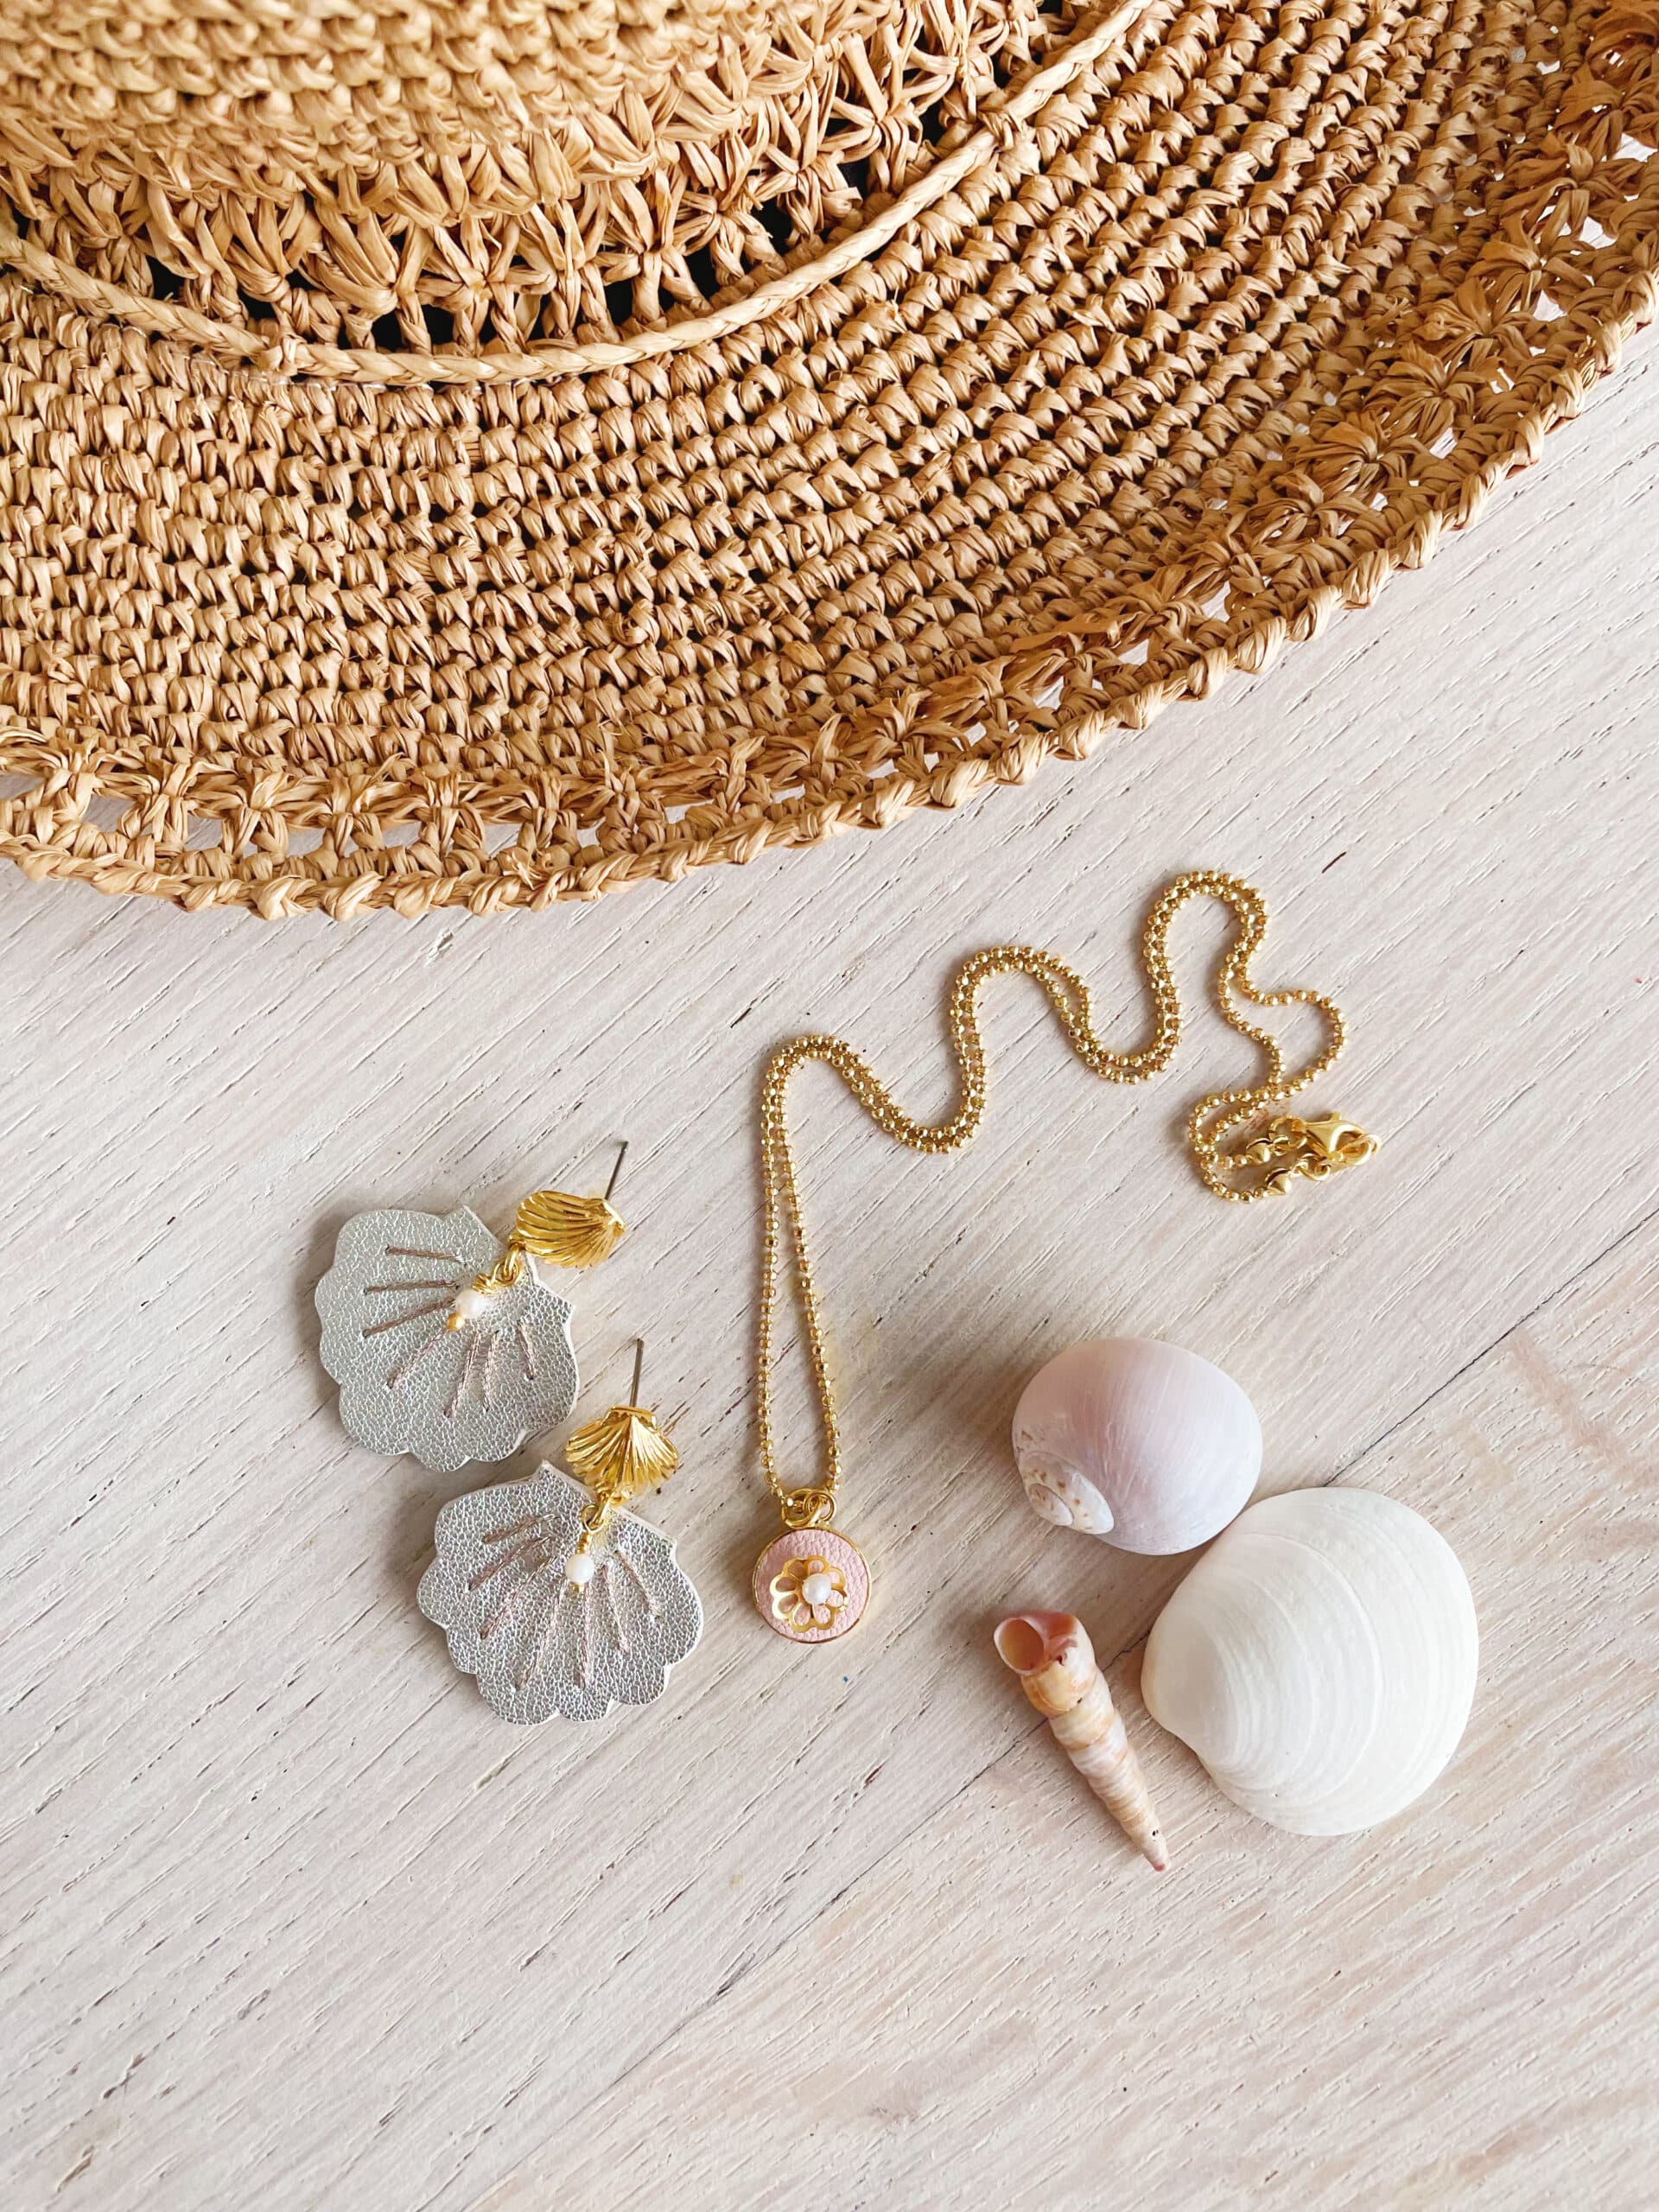 jolis bijoux d'été modèles créateurs pièces uniques fabrication française sur la Côte d'Opale © du vent dans mes valises 2